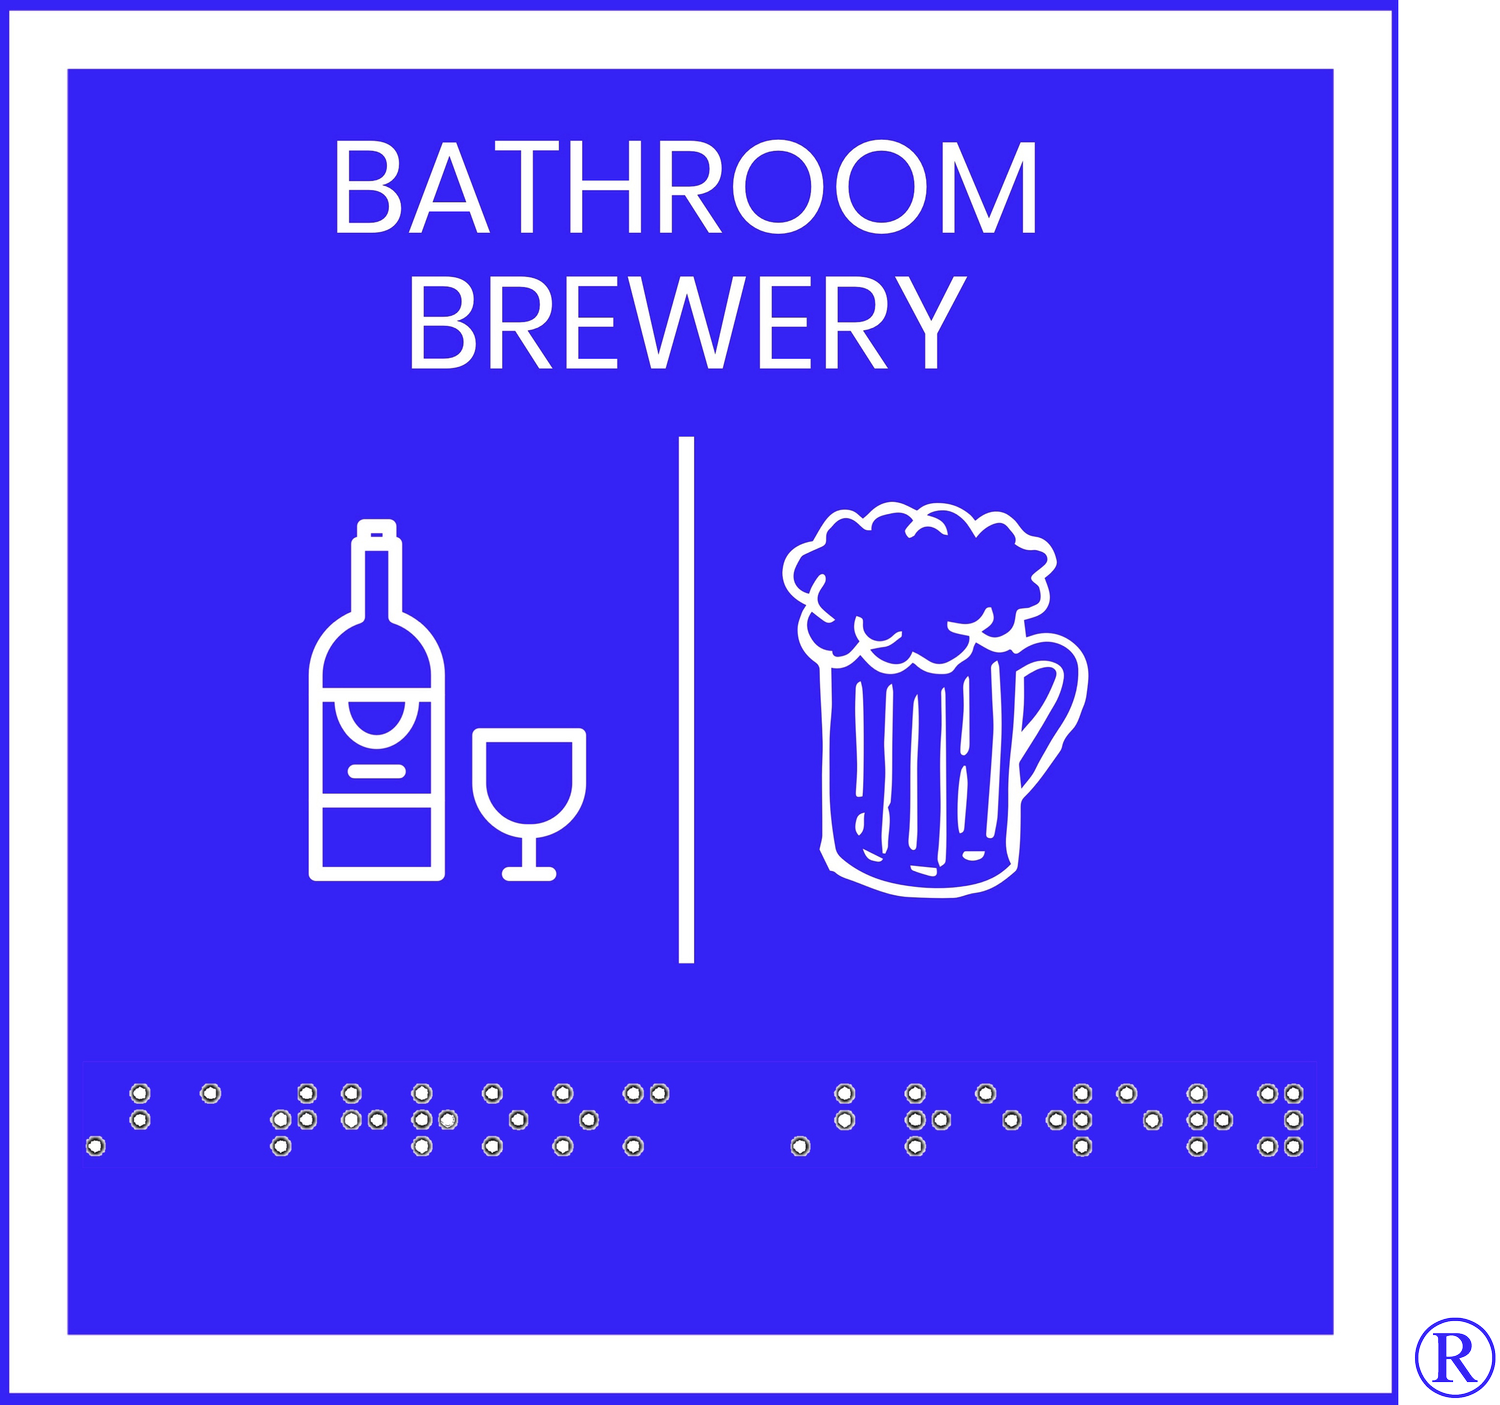 Bathroom Brewery